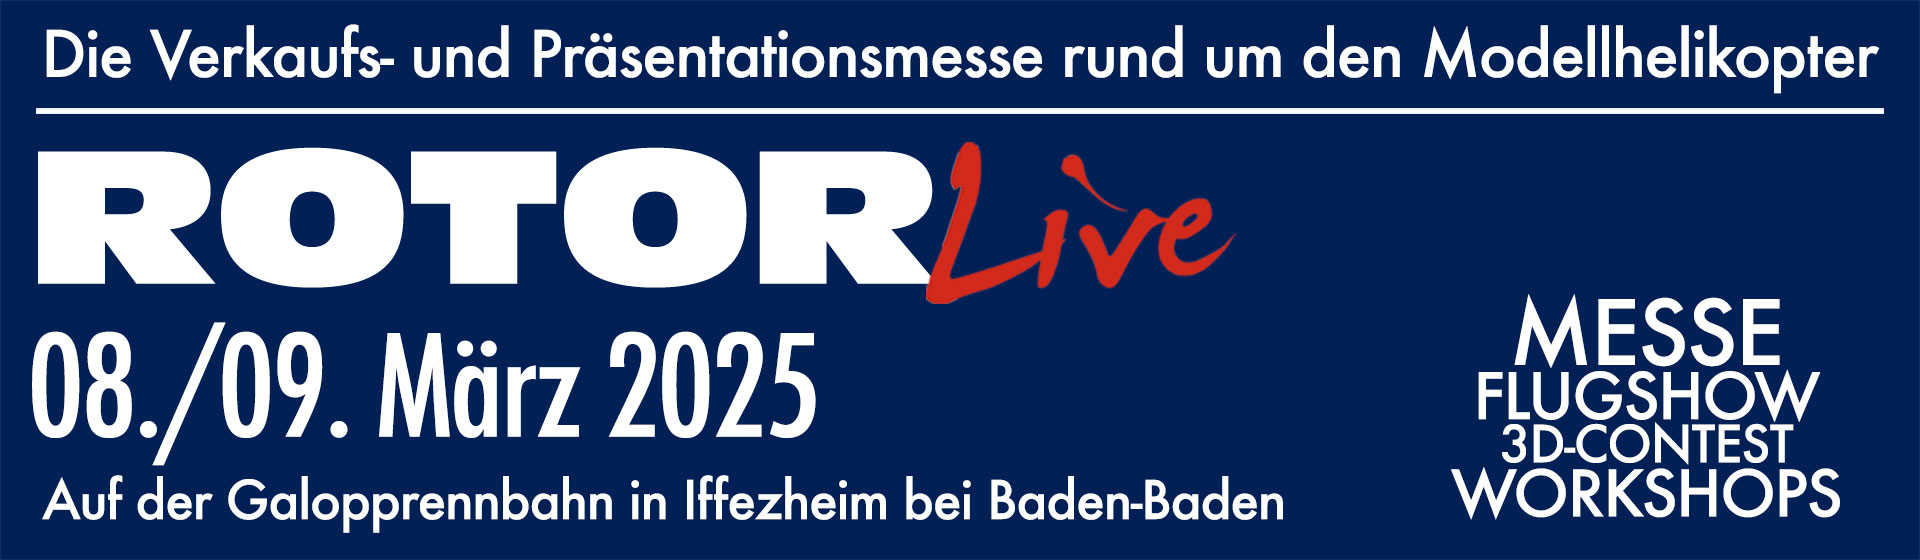 ROTOR live 2025 vom 08. bis 09. März 2025